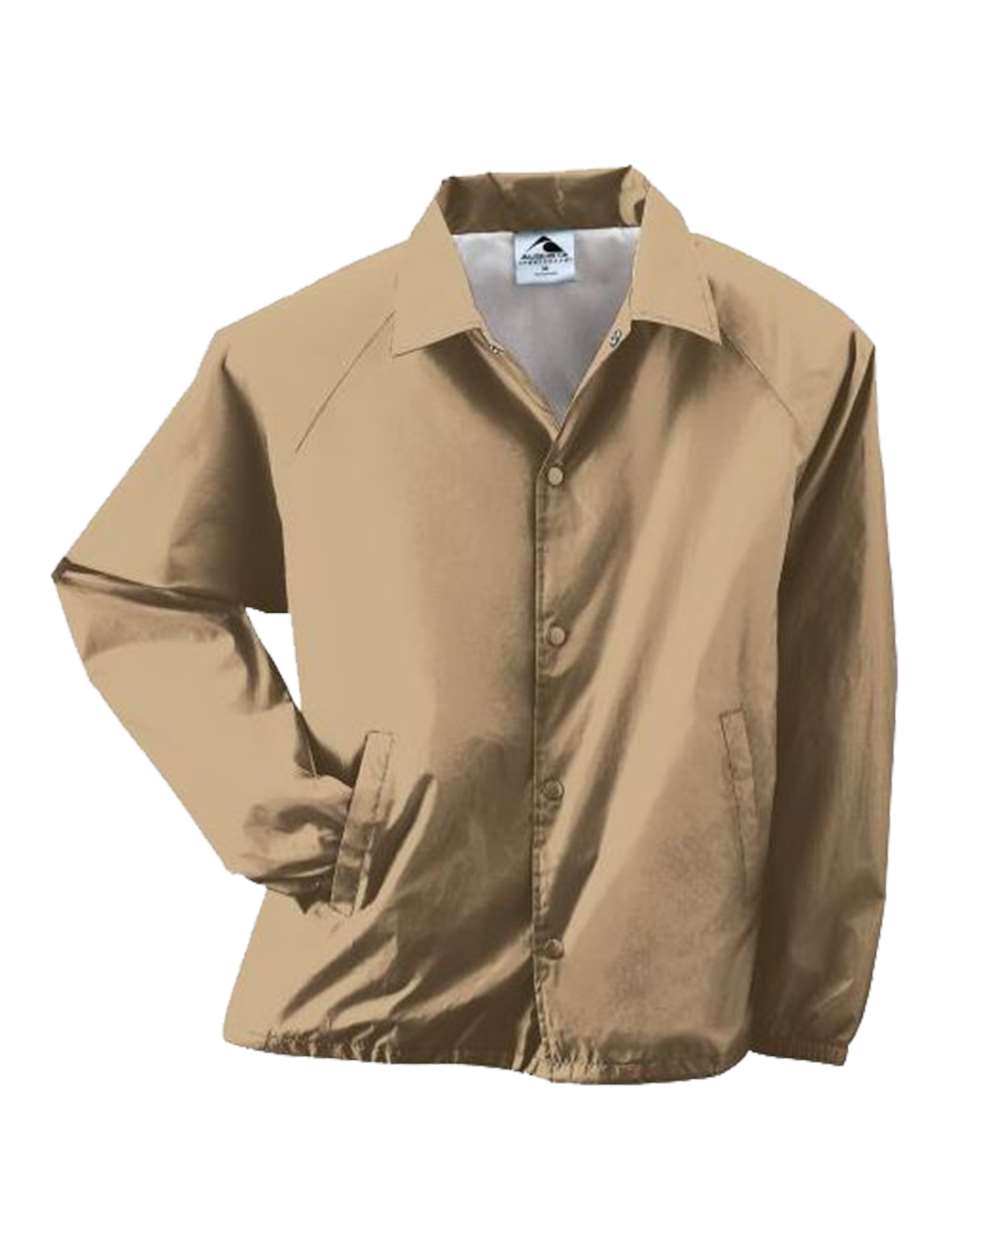 Augusta Sportswear - Coach's Jacket - 3100 - S - 5XL